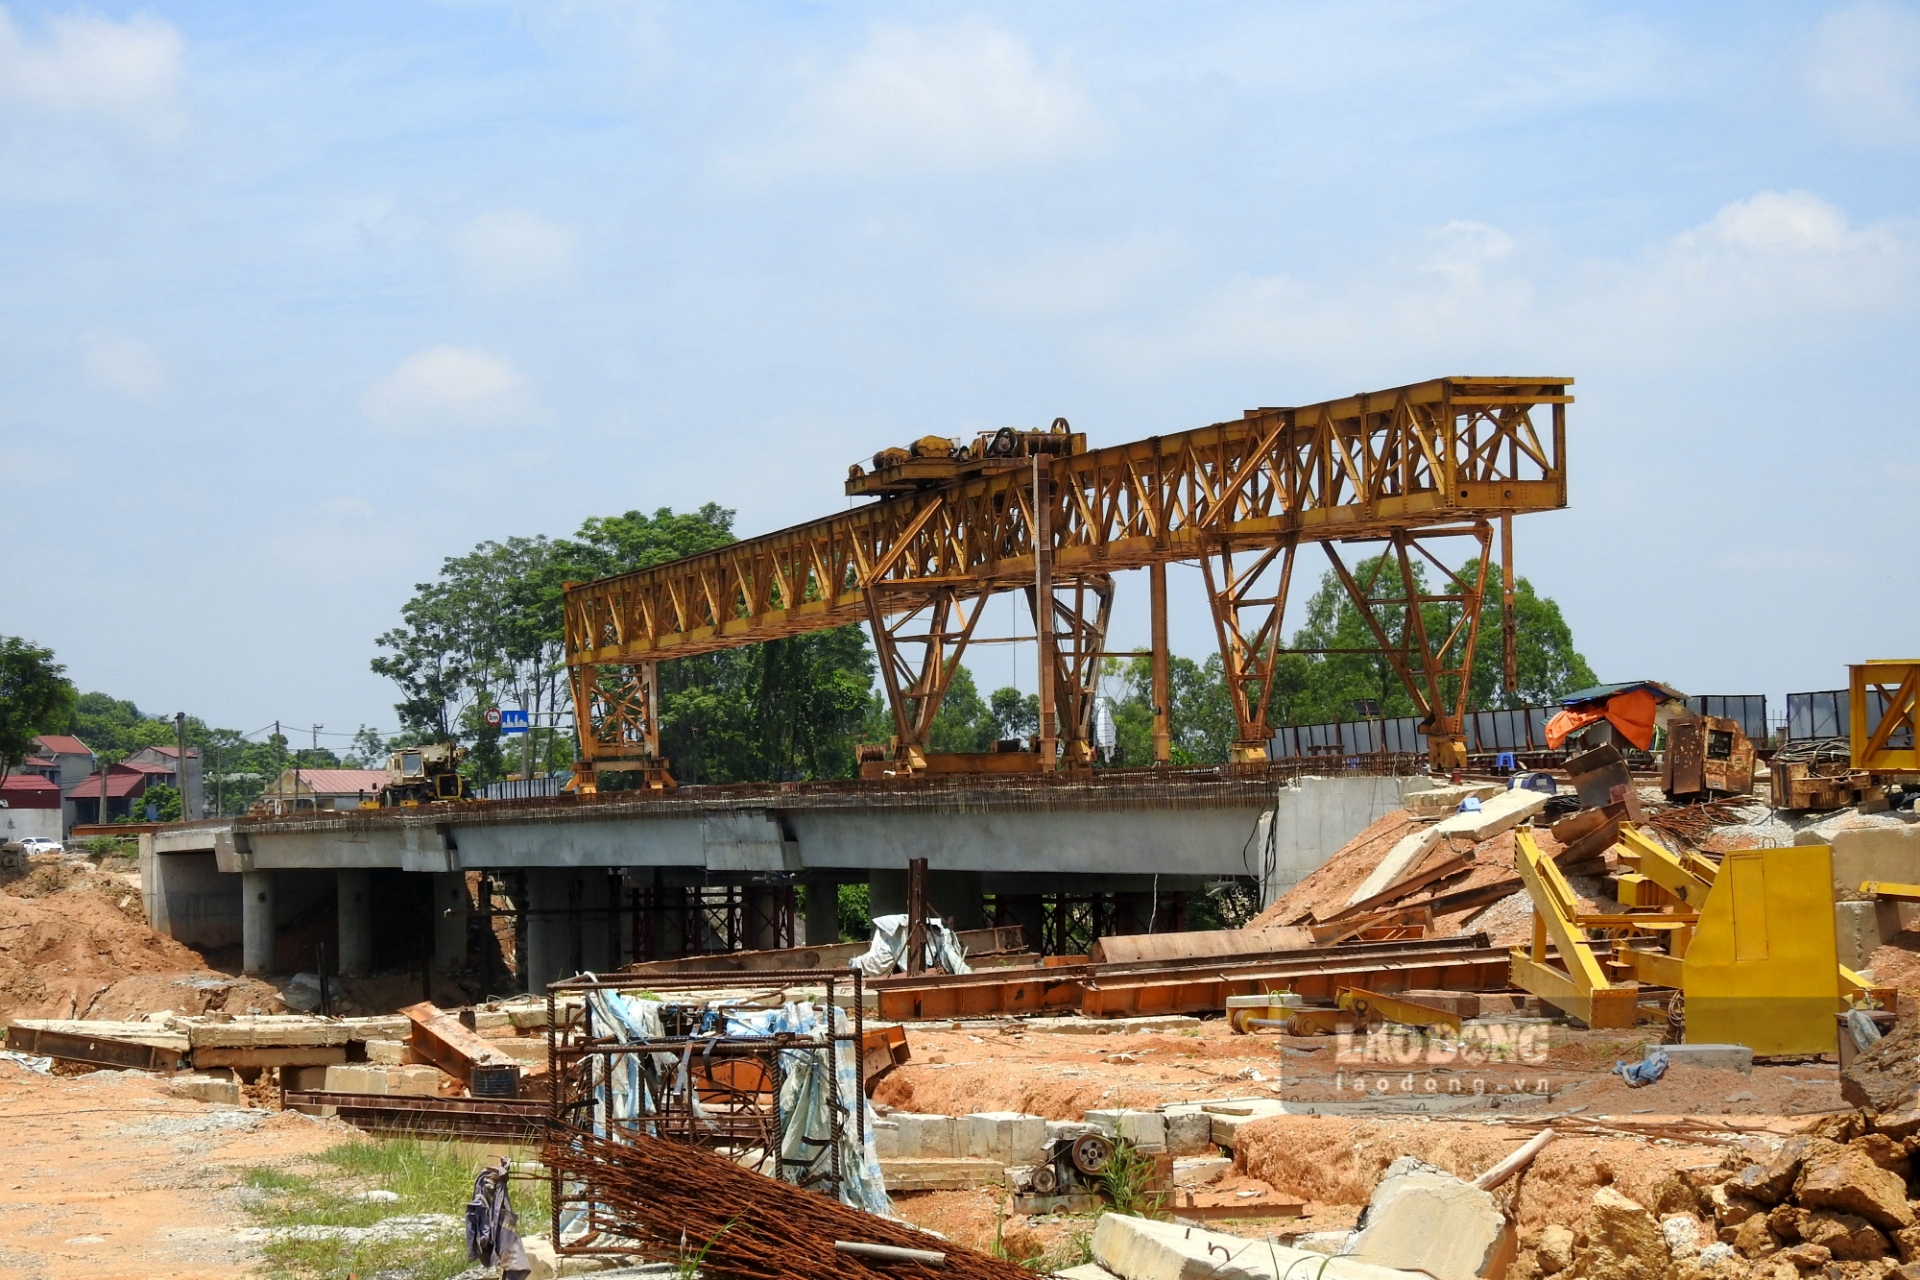 Việc xây dựng cầu Đoan Hùng mới không chỉ có ý nghĩa đảm bảo an toàn giao thông, giảm tải cho cầu cũ và tuyến Quốc lộ 2 huyết mạch mà còn có ý nghĩa quan trọng trong thúc đẩy phát triển kinh tế - xã hội của địa phương.